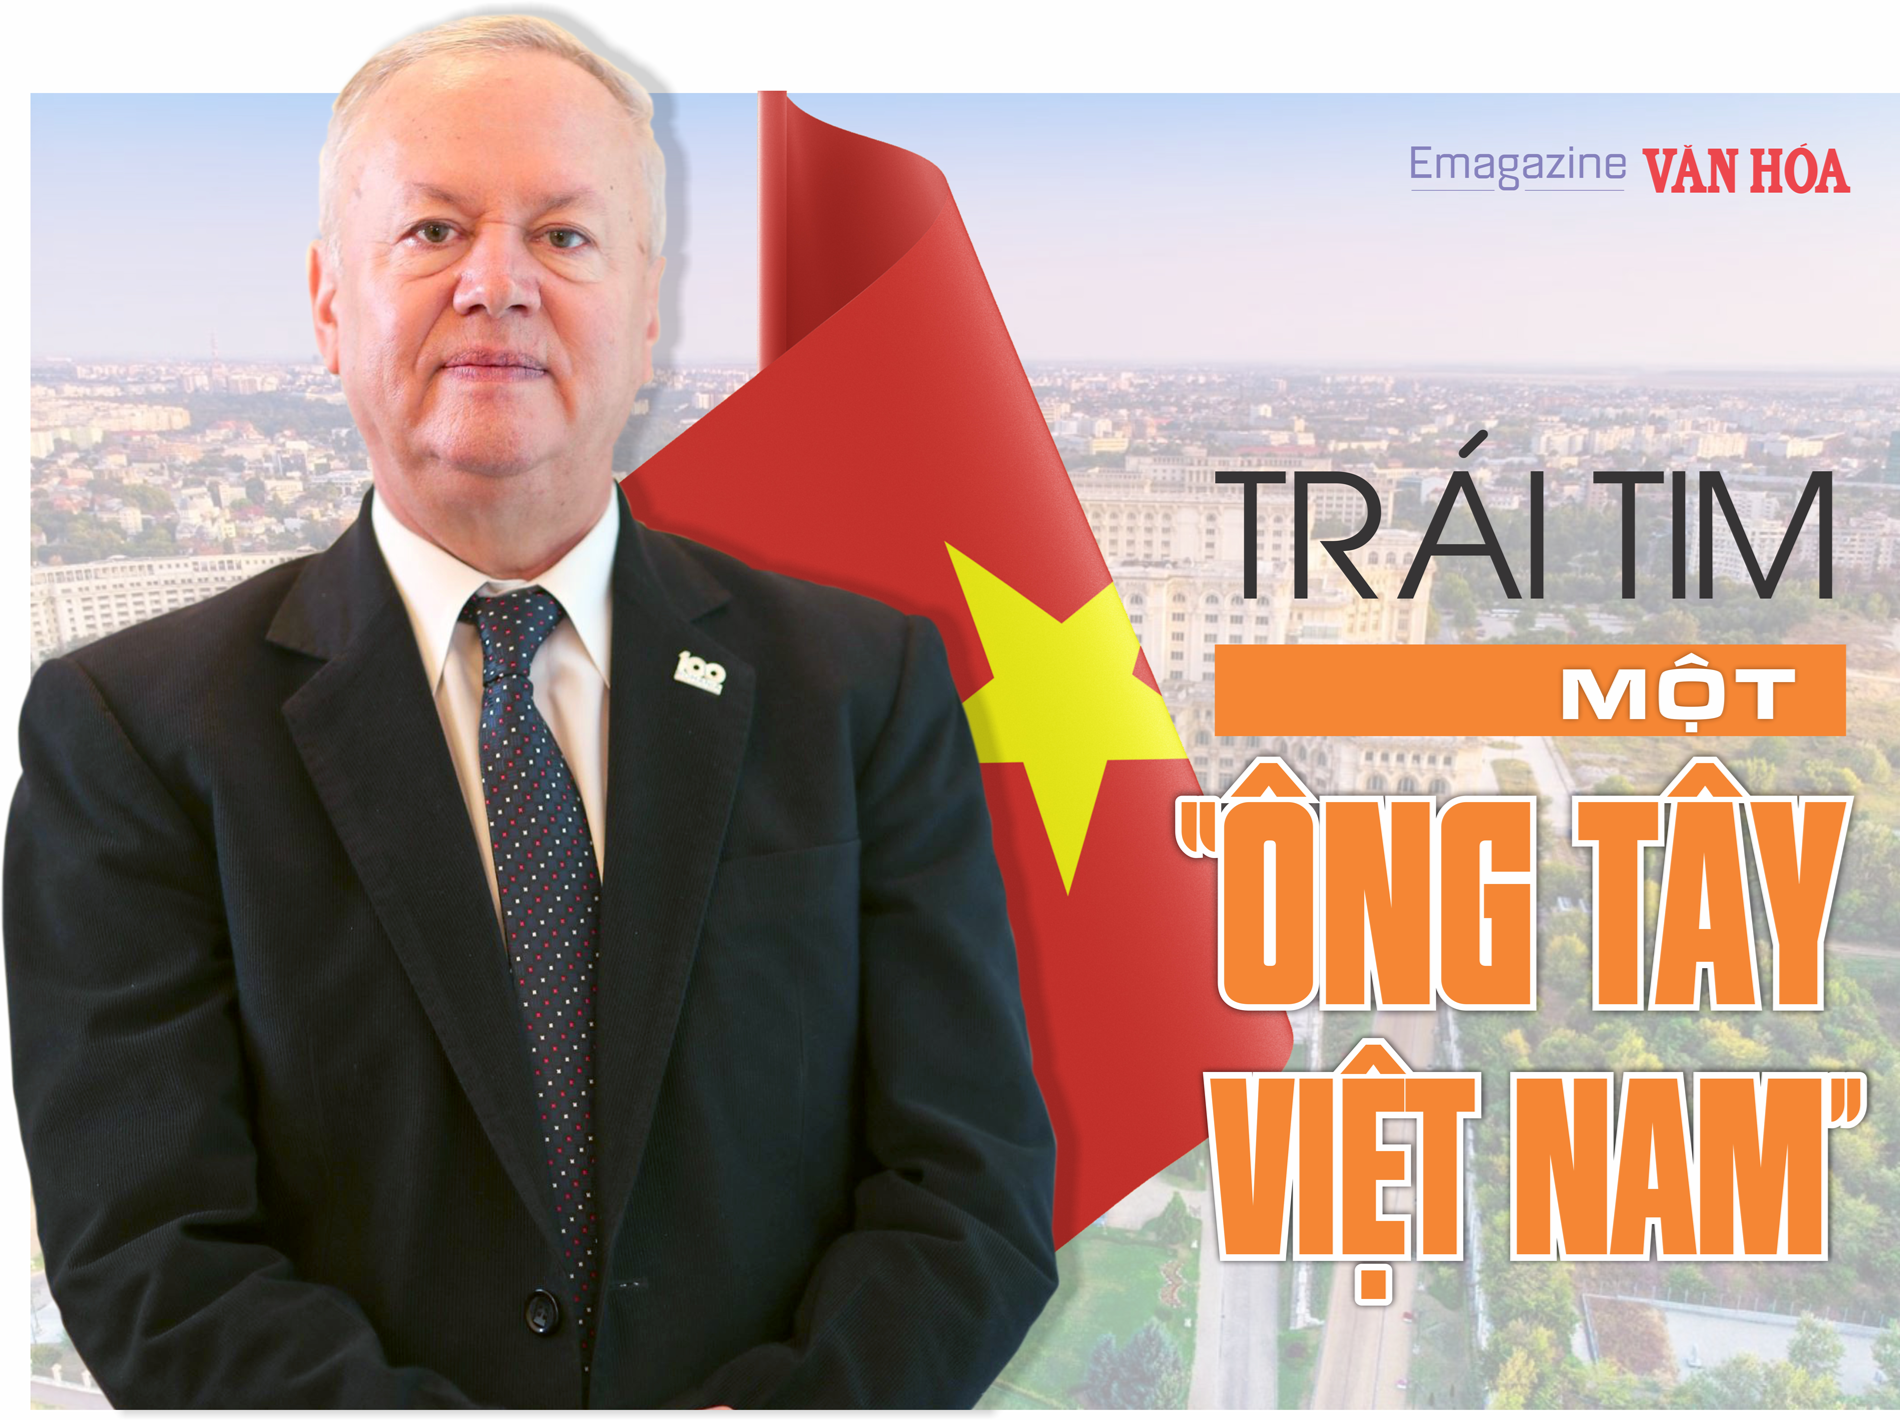 Trái tim một “ông Tây Việt Nam” - ảnh 1